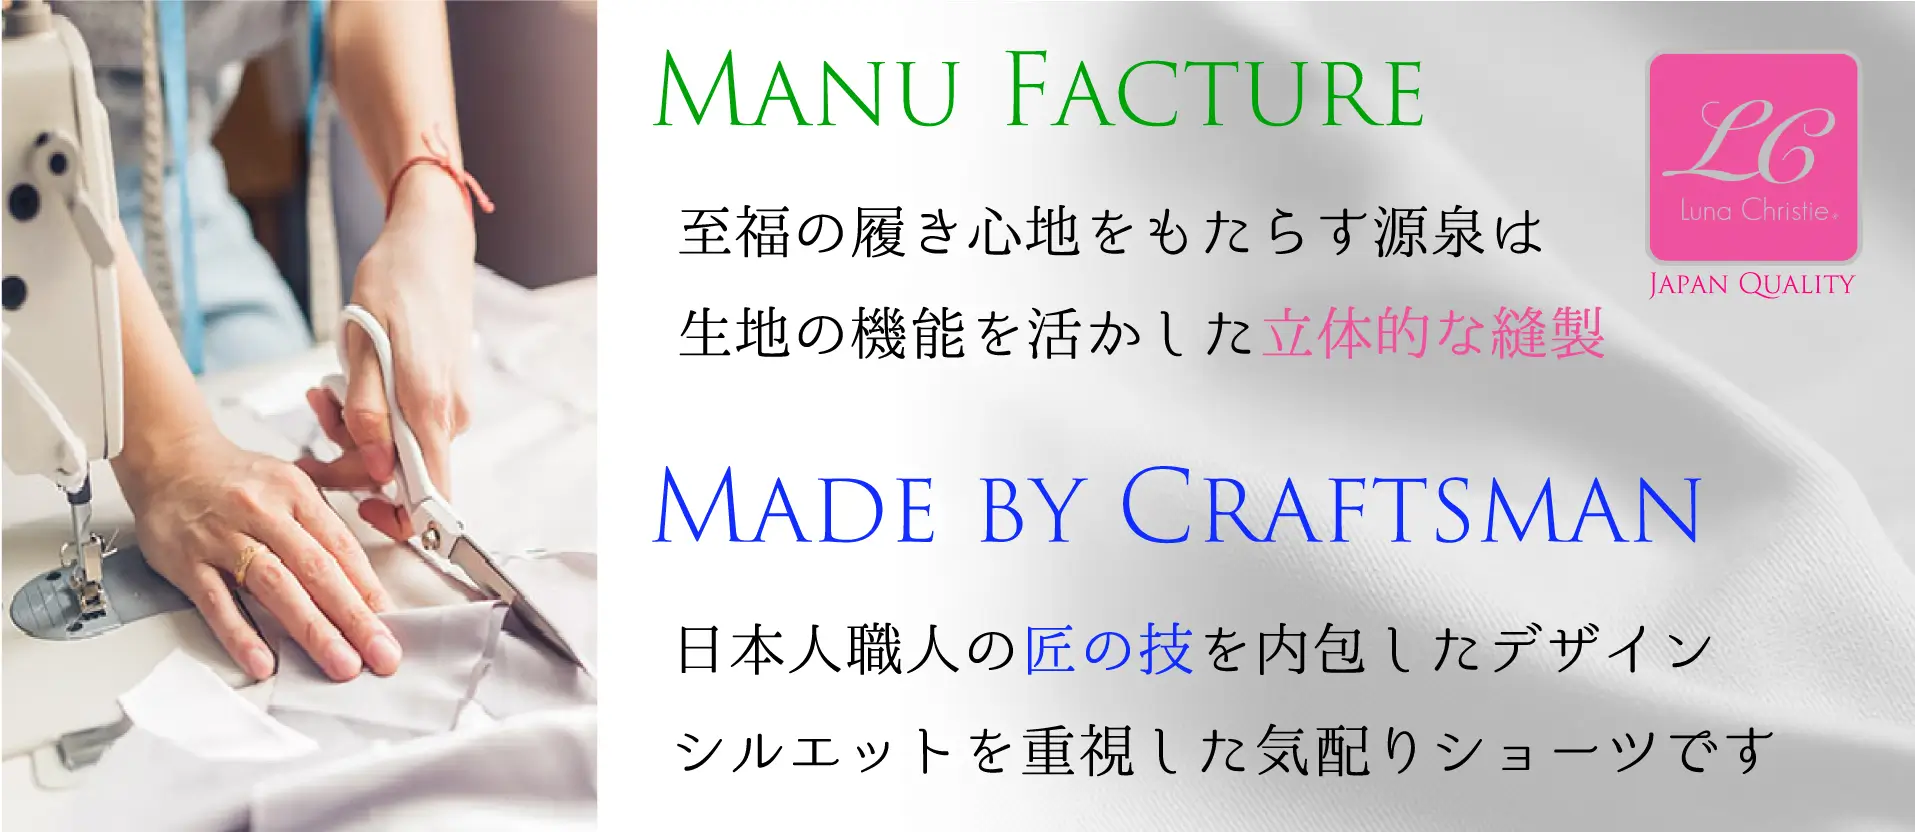 Luna Christie至福の履き心地をもたらす源泉はファブリックの機能だけではありません。その機能を活かす、日本人職人の手による縫製です。